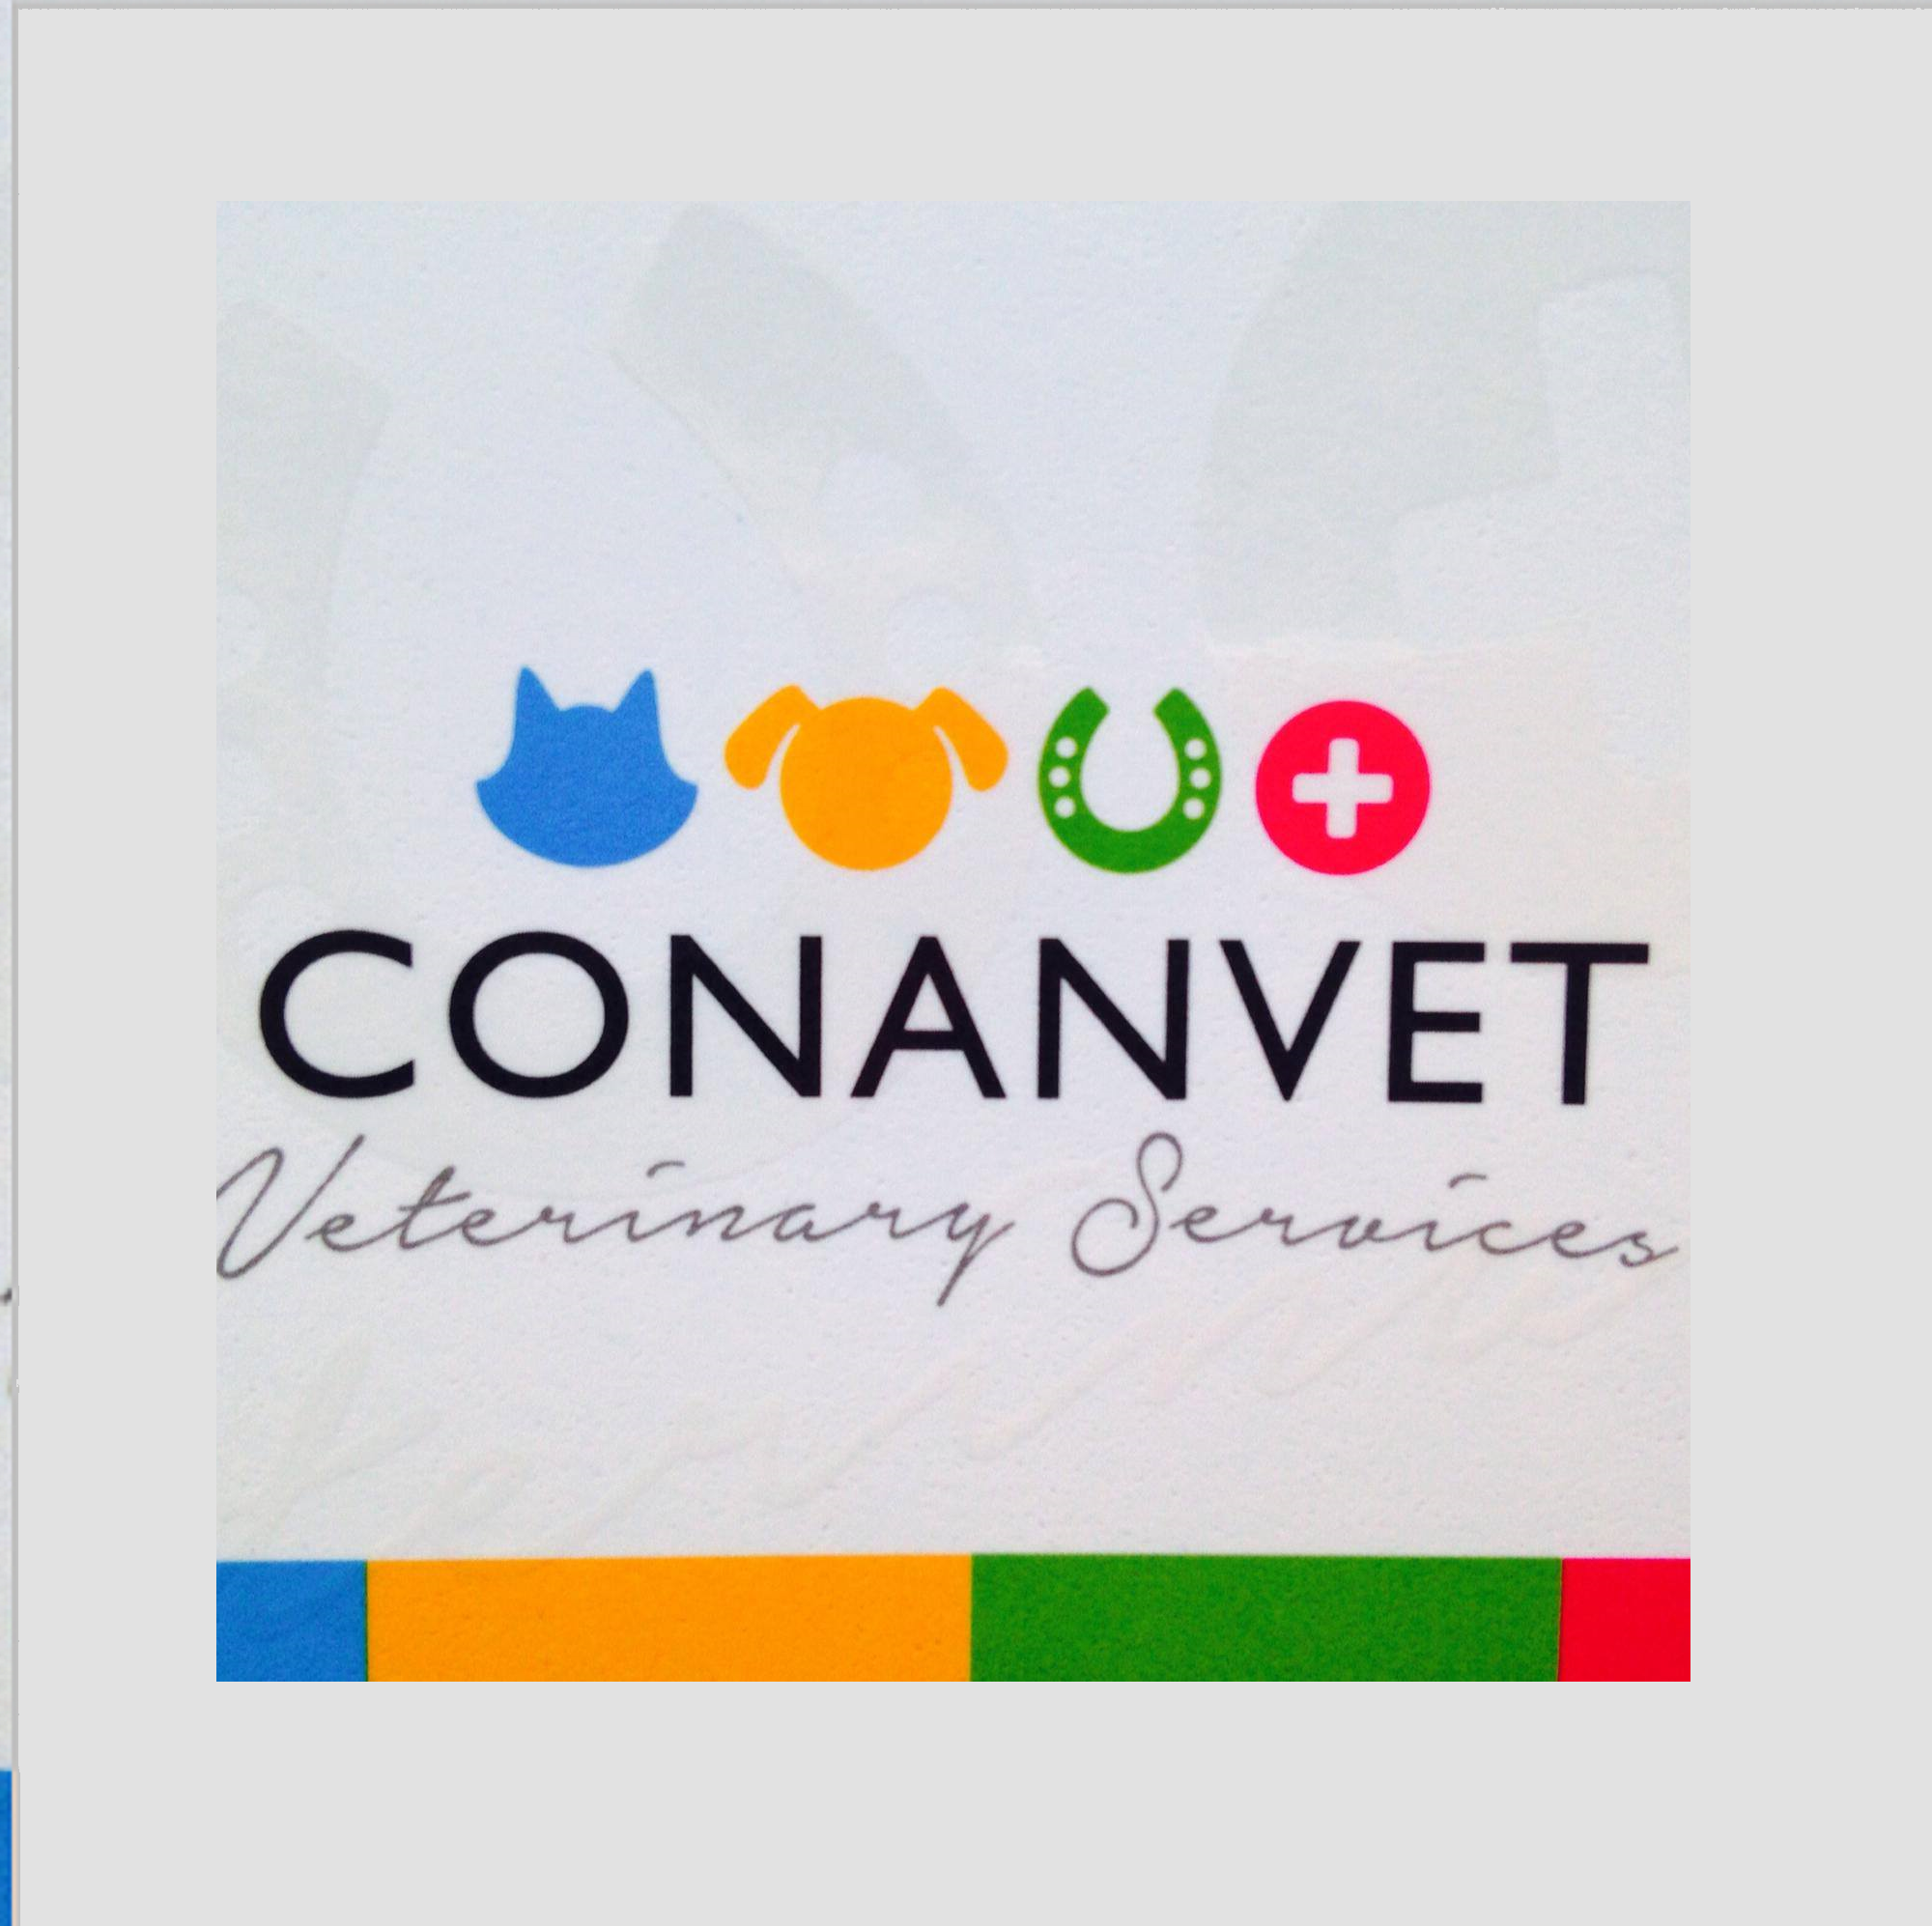 Conanvet Ltd